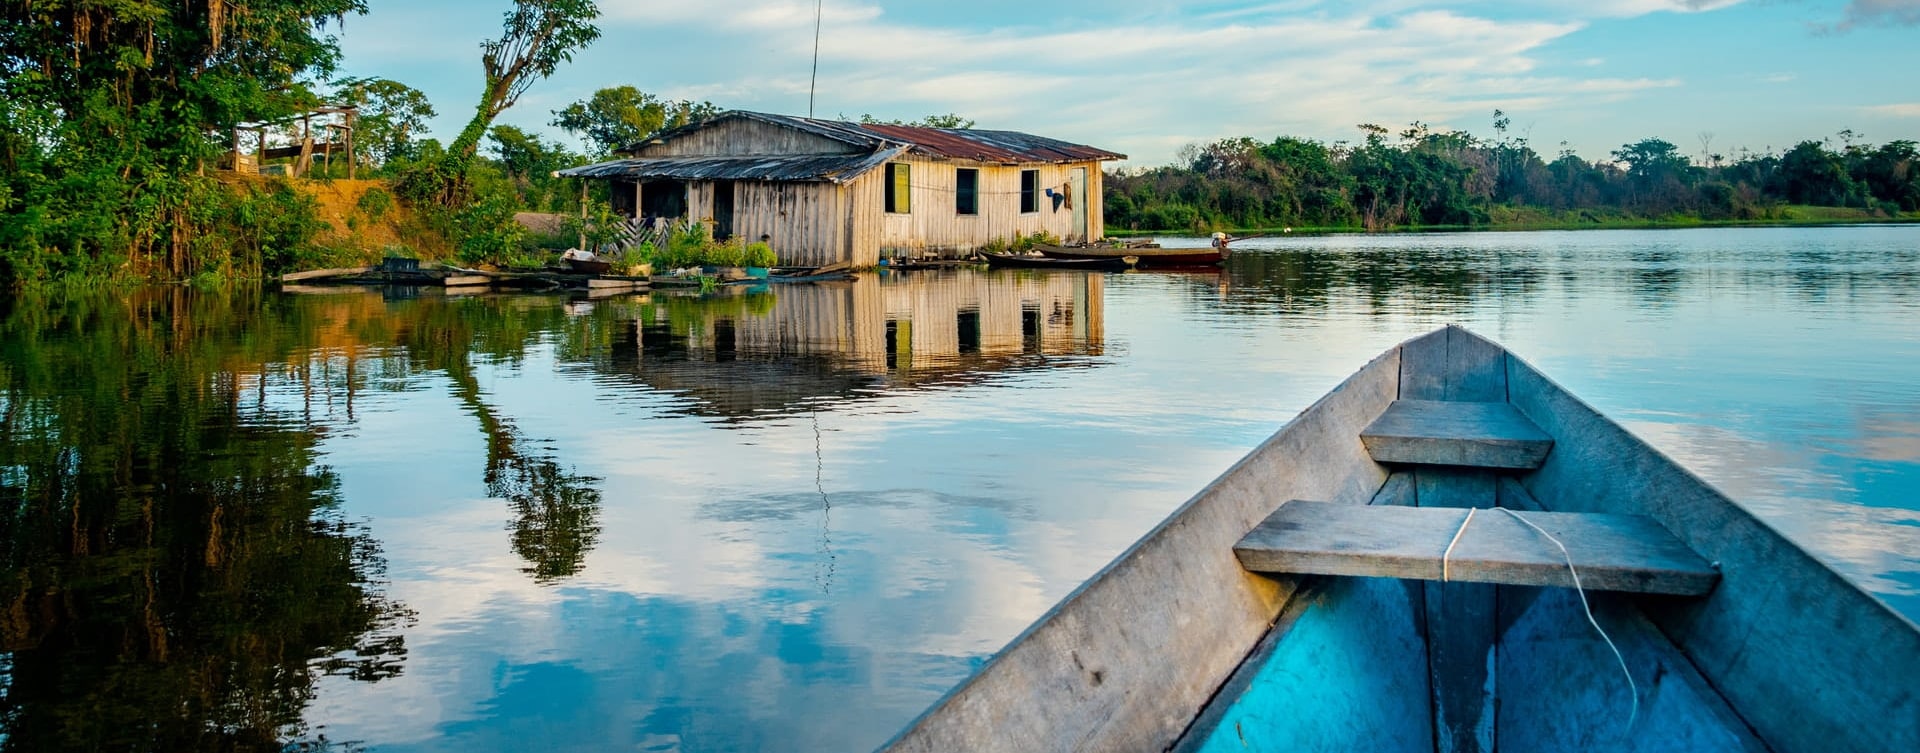 Paseo en canoa por el río amazonas en semana santa